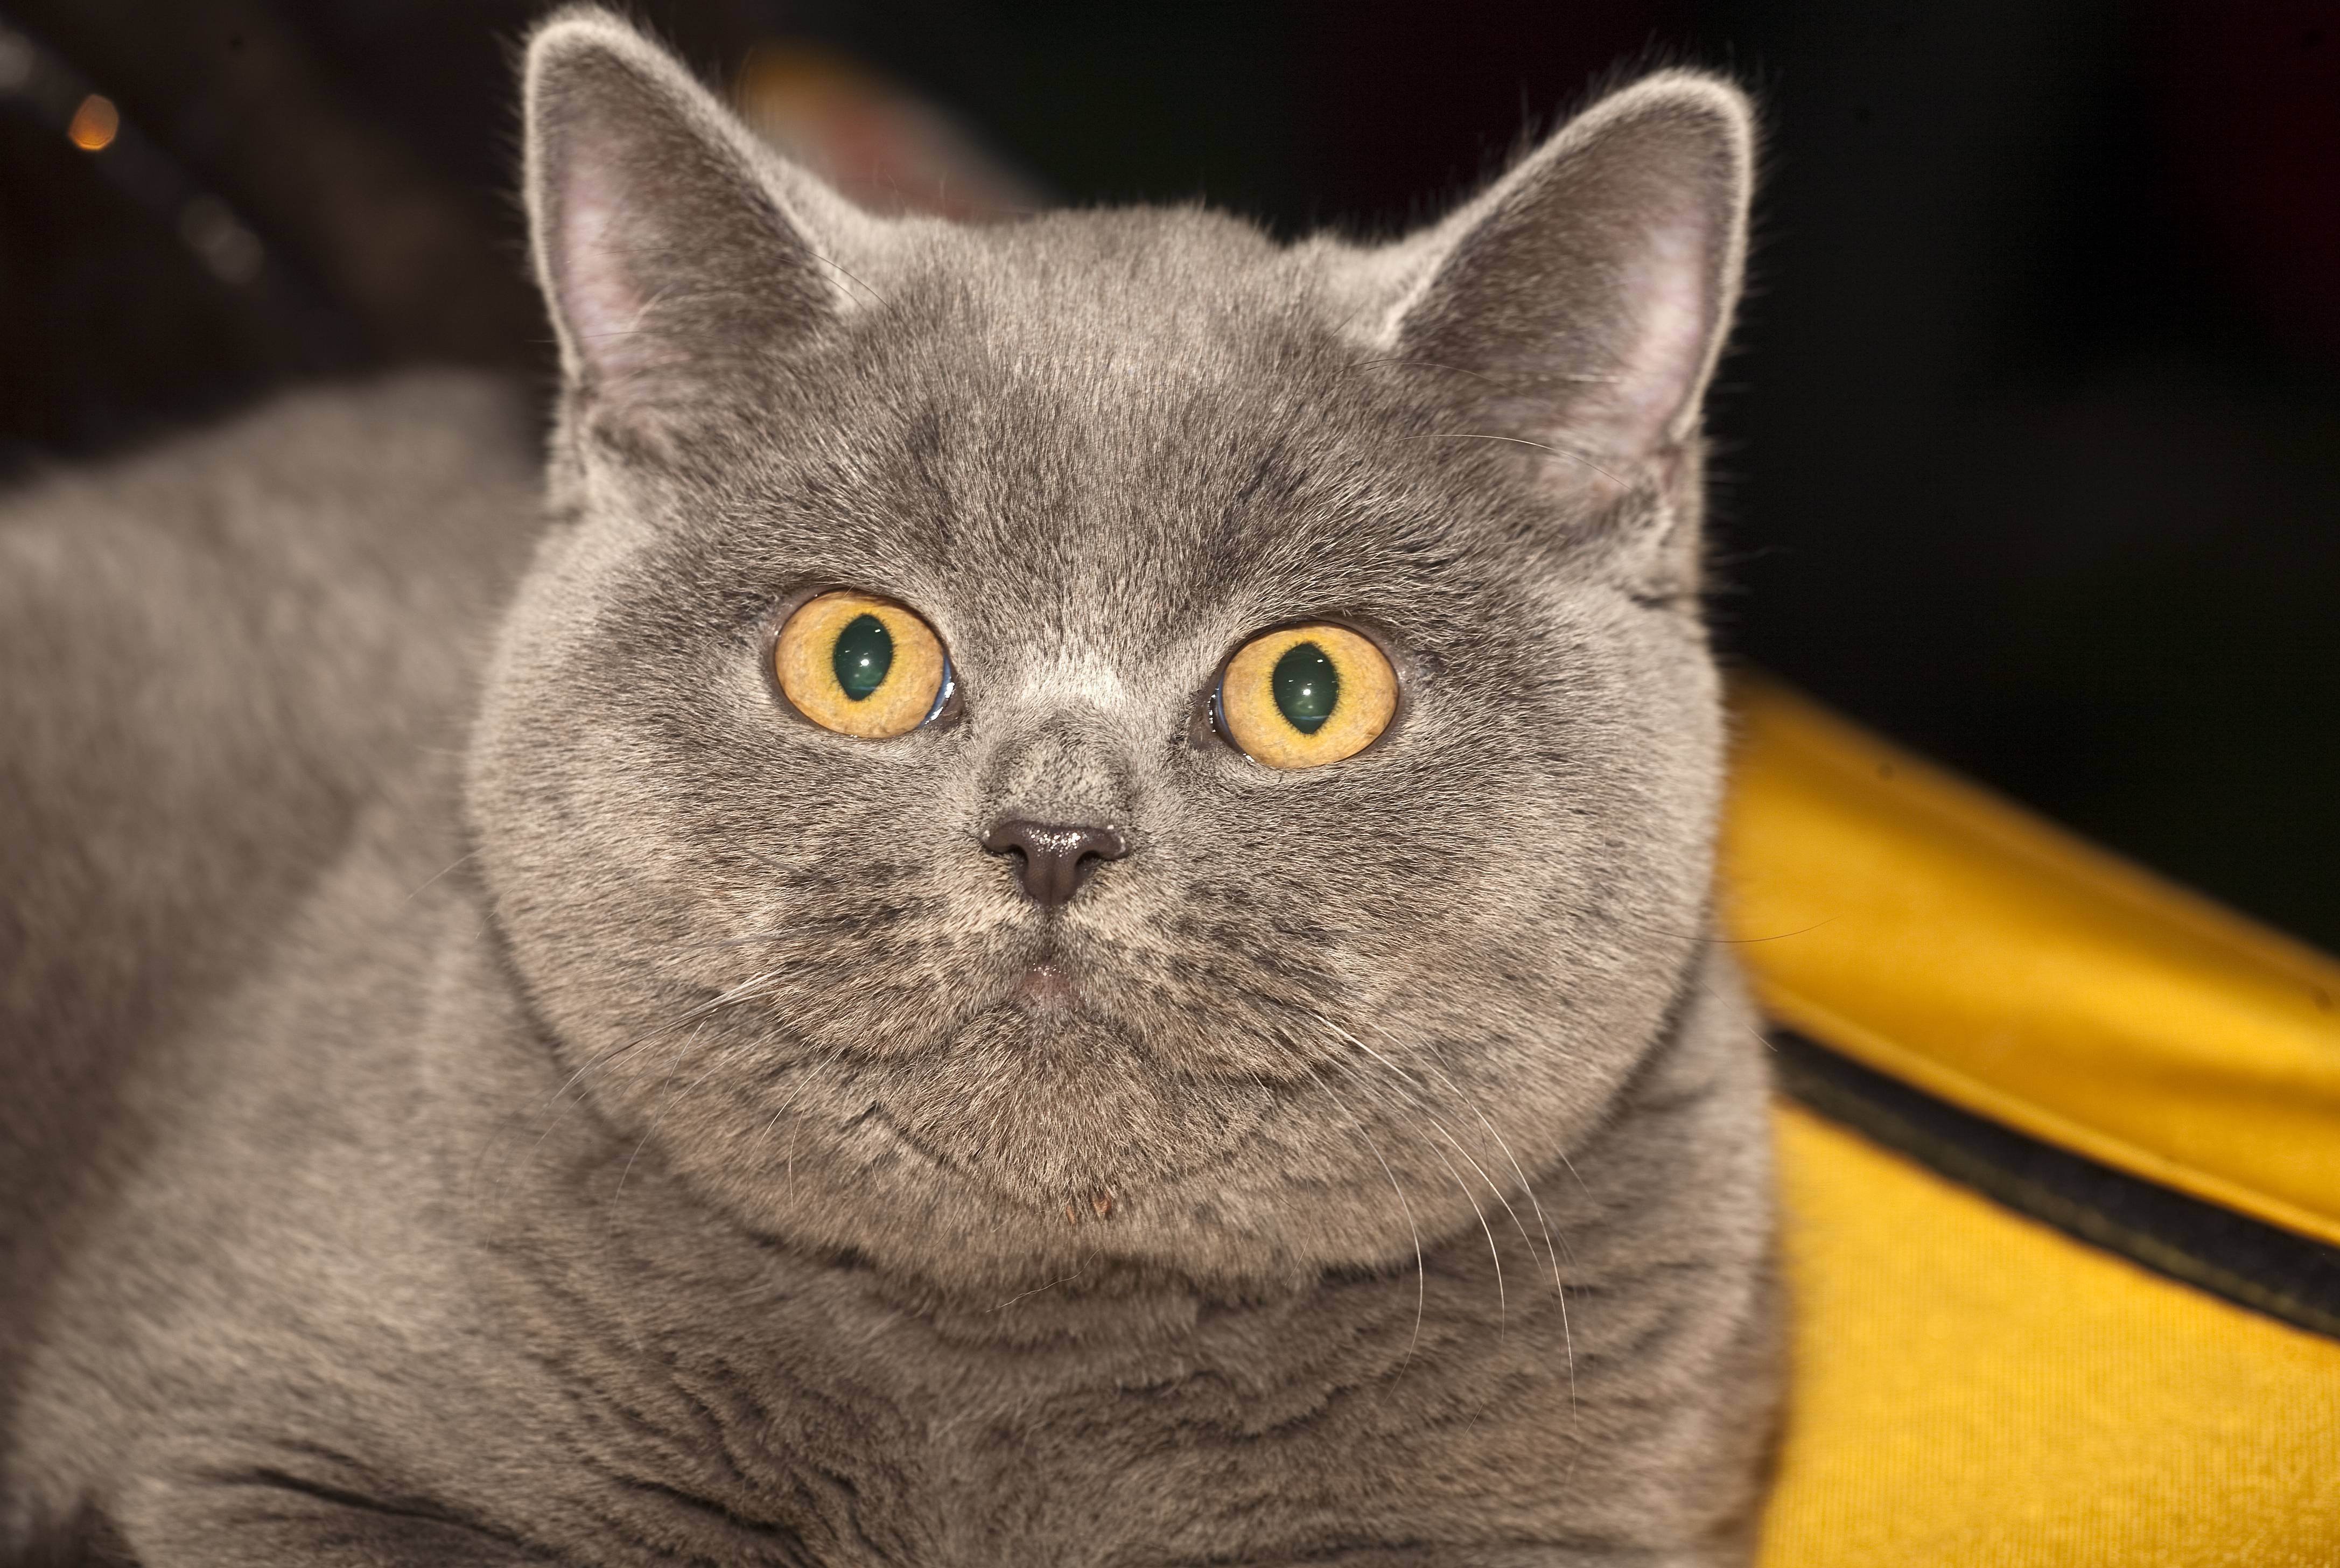 Шотландские вислоухие кошки: виды окраса, характер и правила содержания